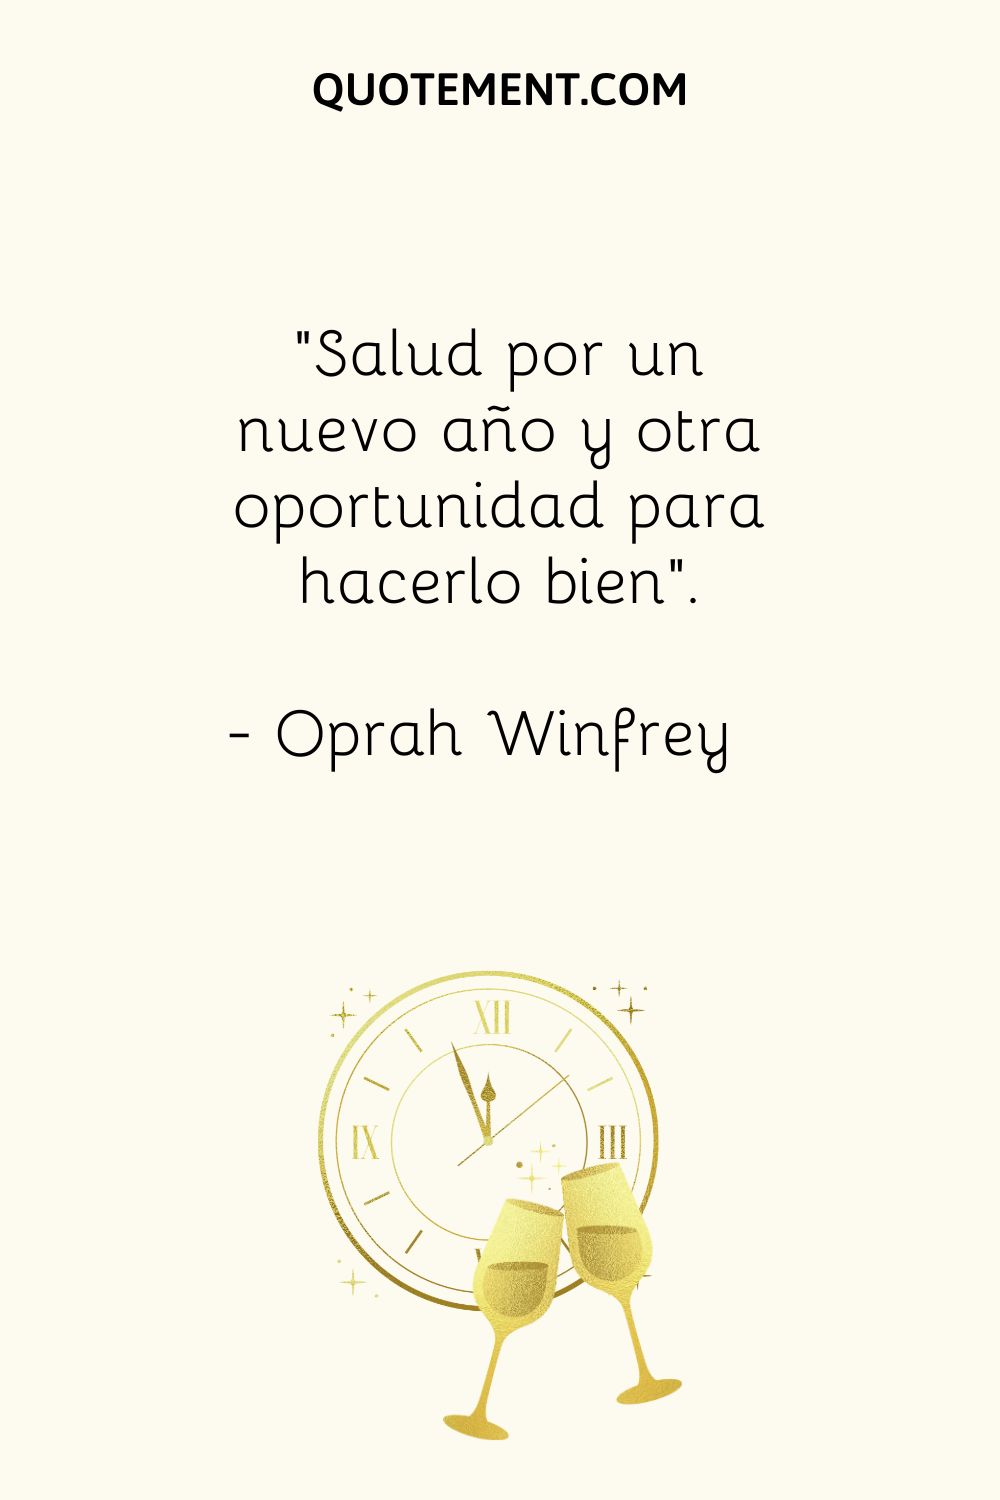 "Salud por un nuevo año y otra oportunidad para hacerlo bien". - Oprah Winfrey